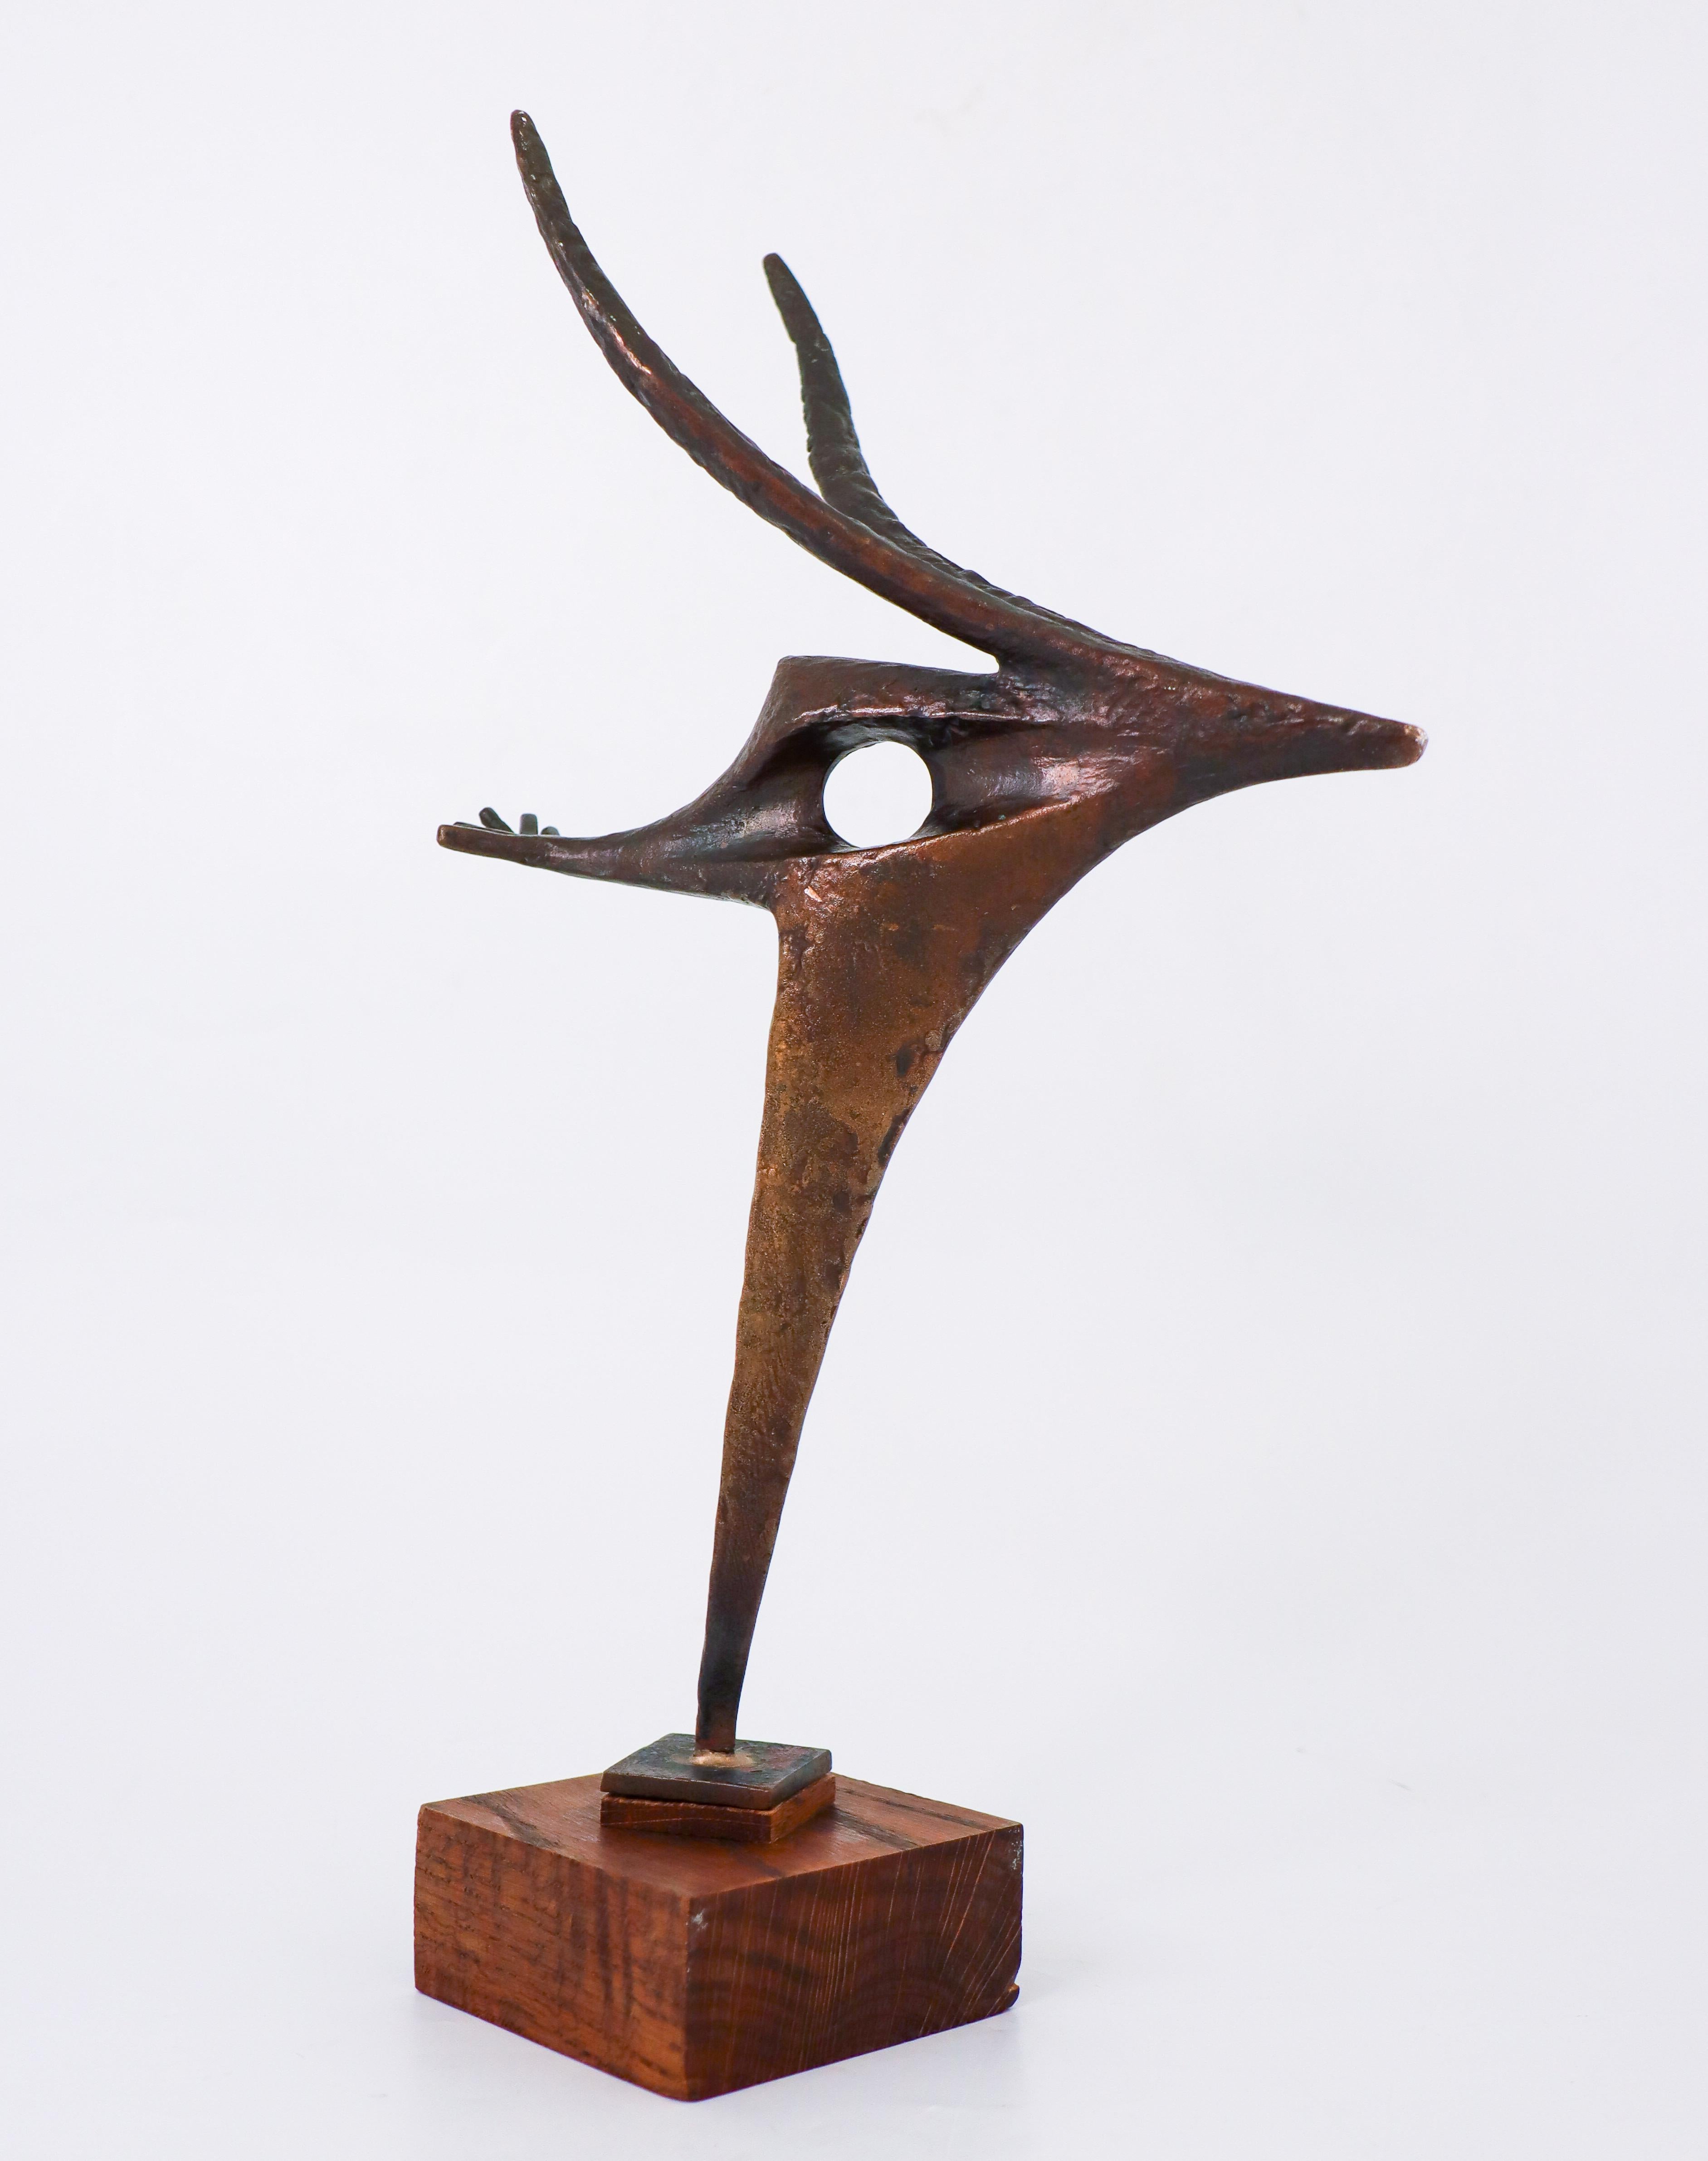 Une belle sculpture en bronze de l'artiste suédois Bengt Amundin, conçue en 1957. La sculpture s'appelle 